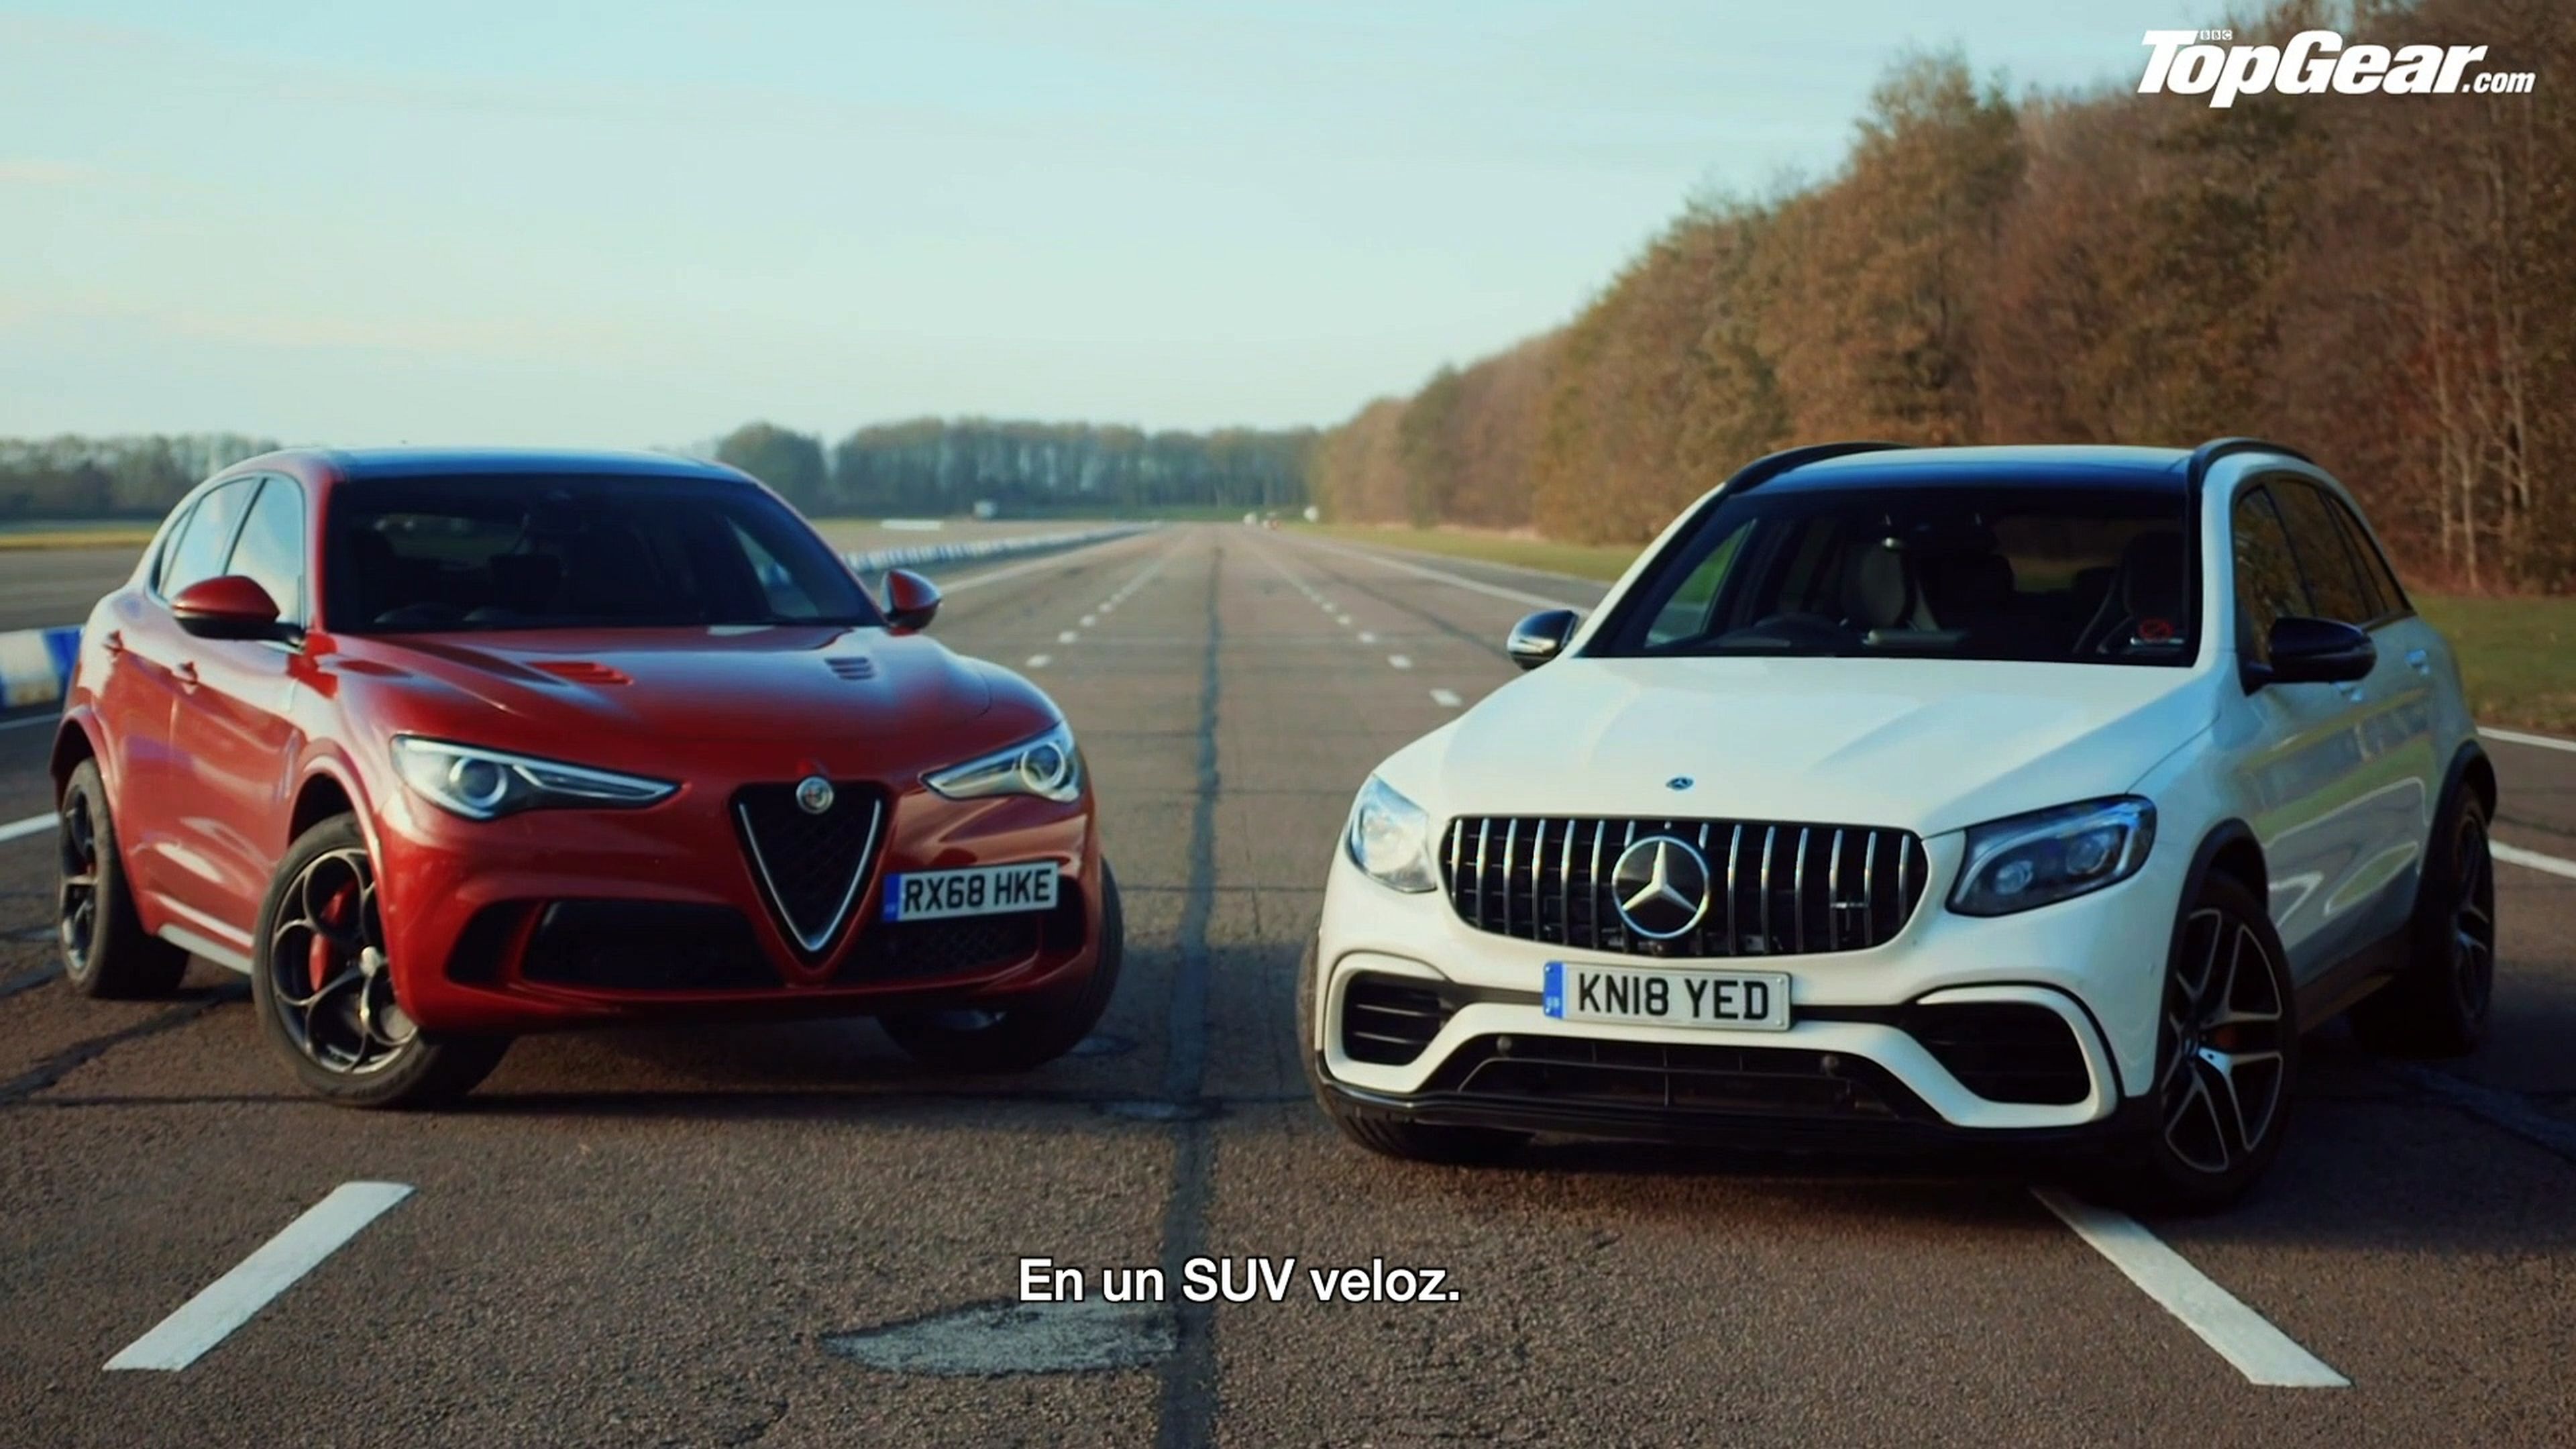 VÍDEO: Alfa Romeo Stelvio QV vs Mercedes GLC 63, ¿cuál acelera más?